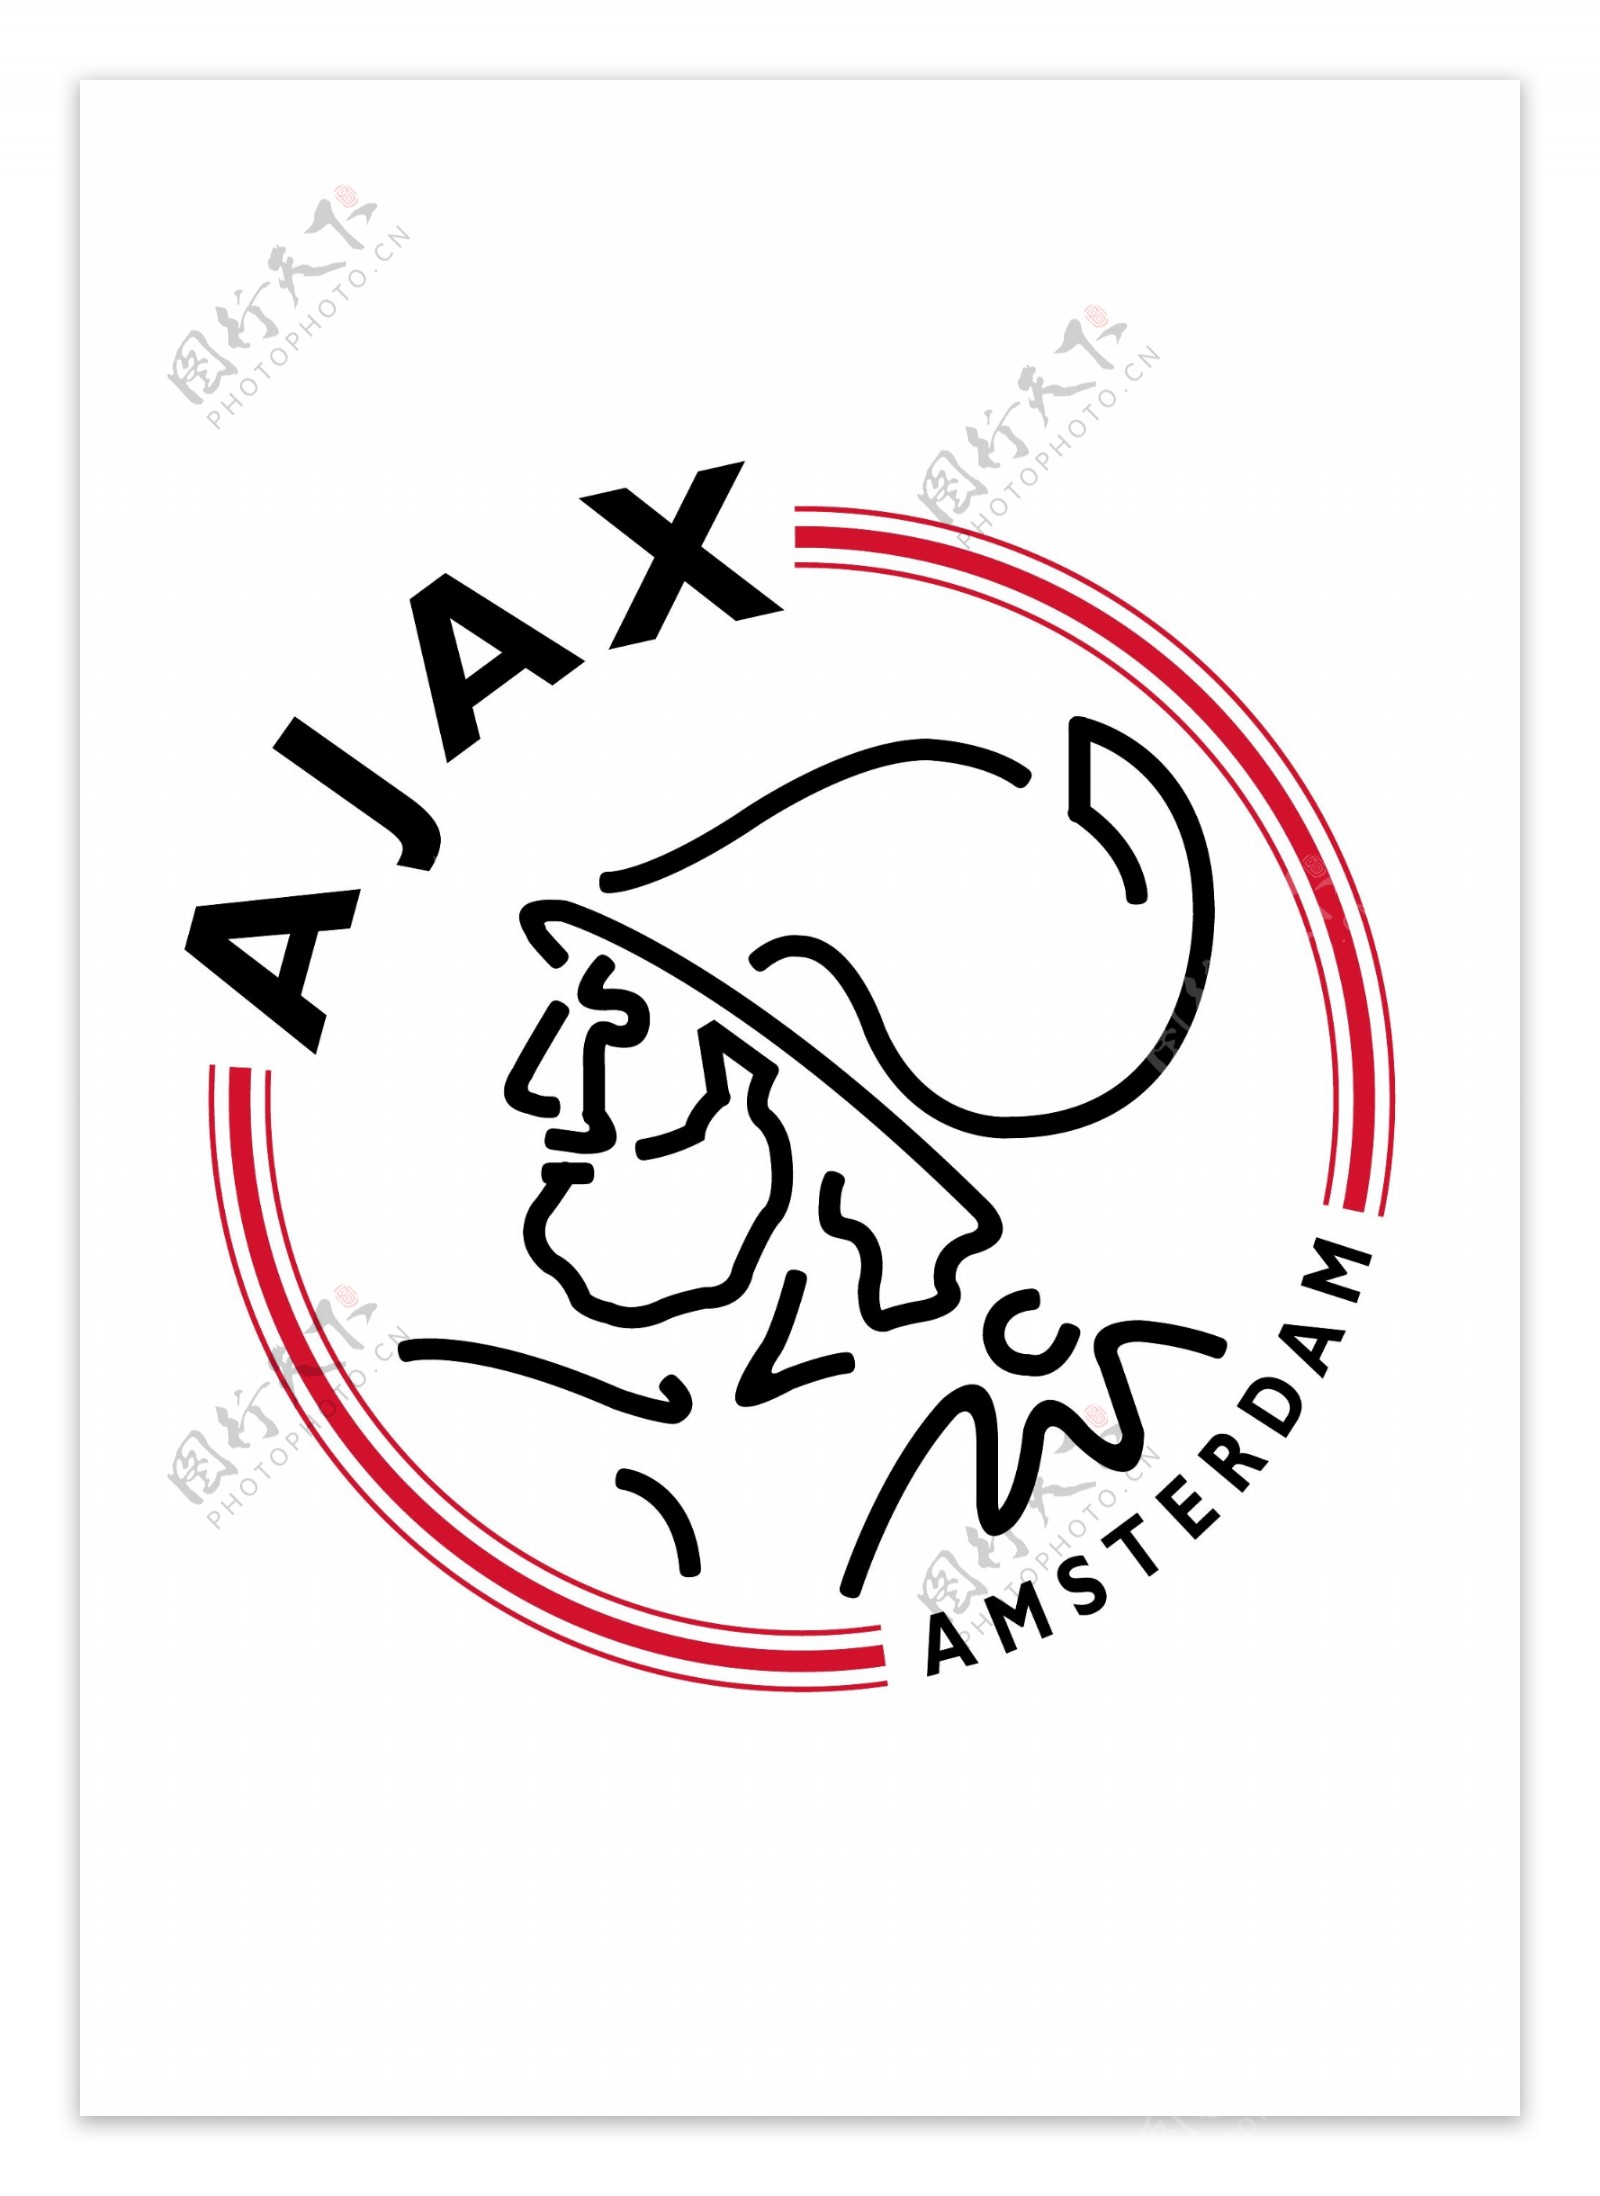 阿姆斯特丹阿贾克斯足球俱乐部徽